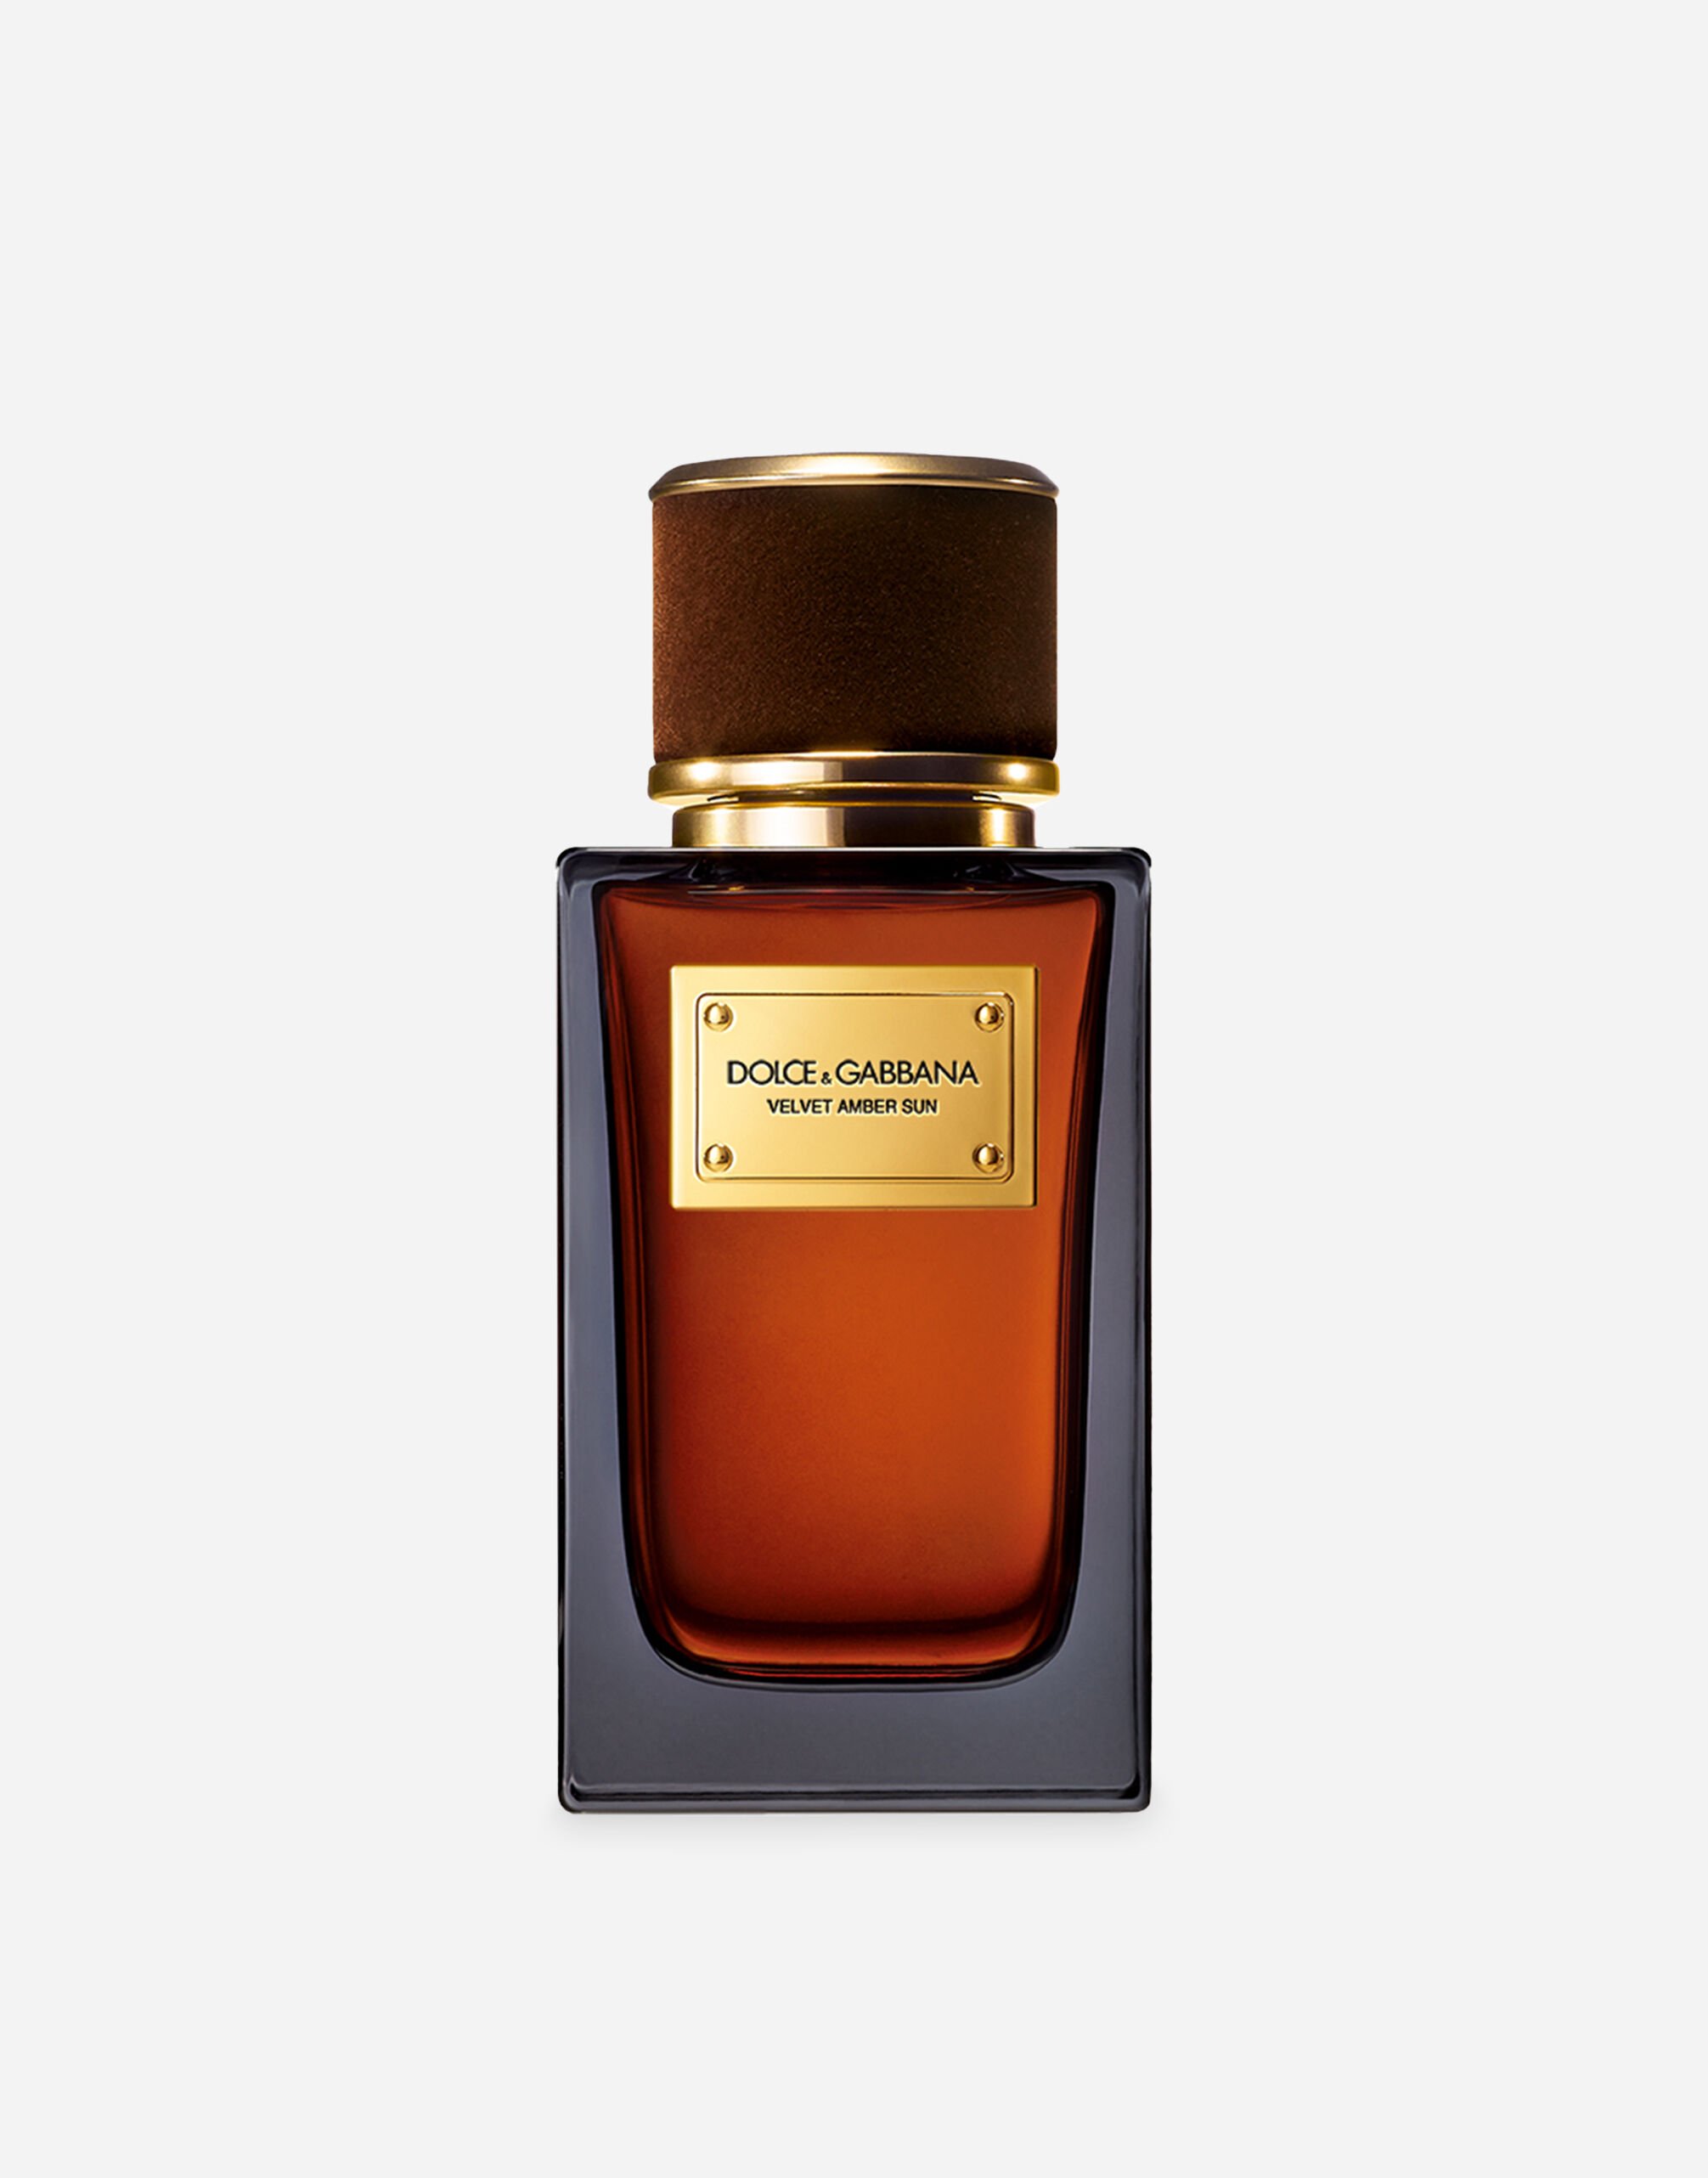 Dolce & Gabbana Velvet Amber Sun Eau de Parfum - VP003BVP000